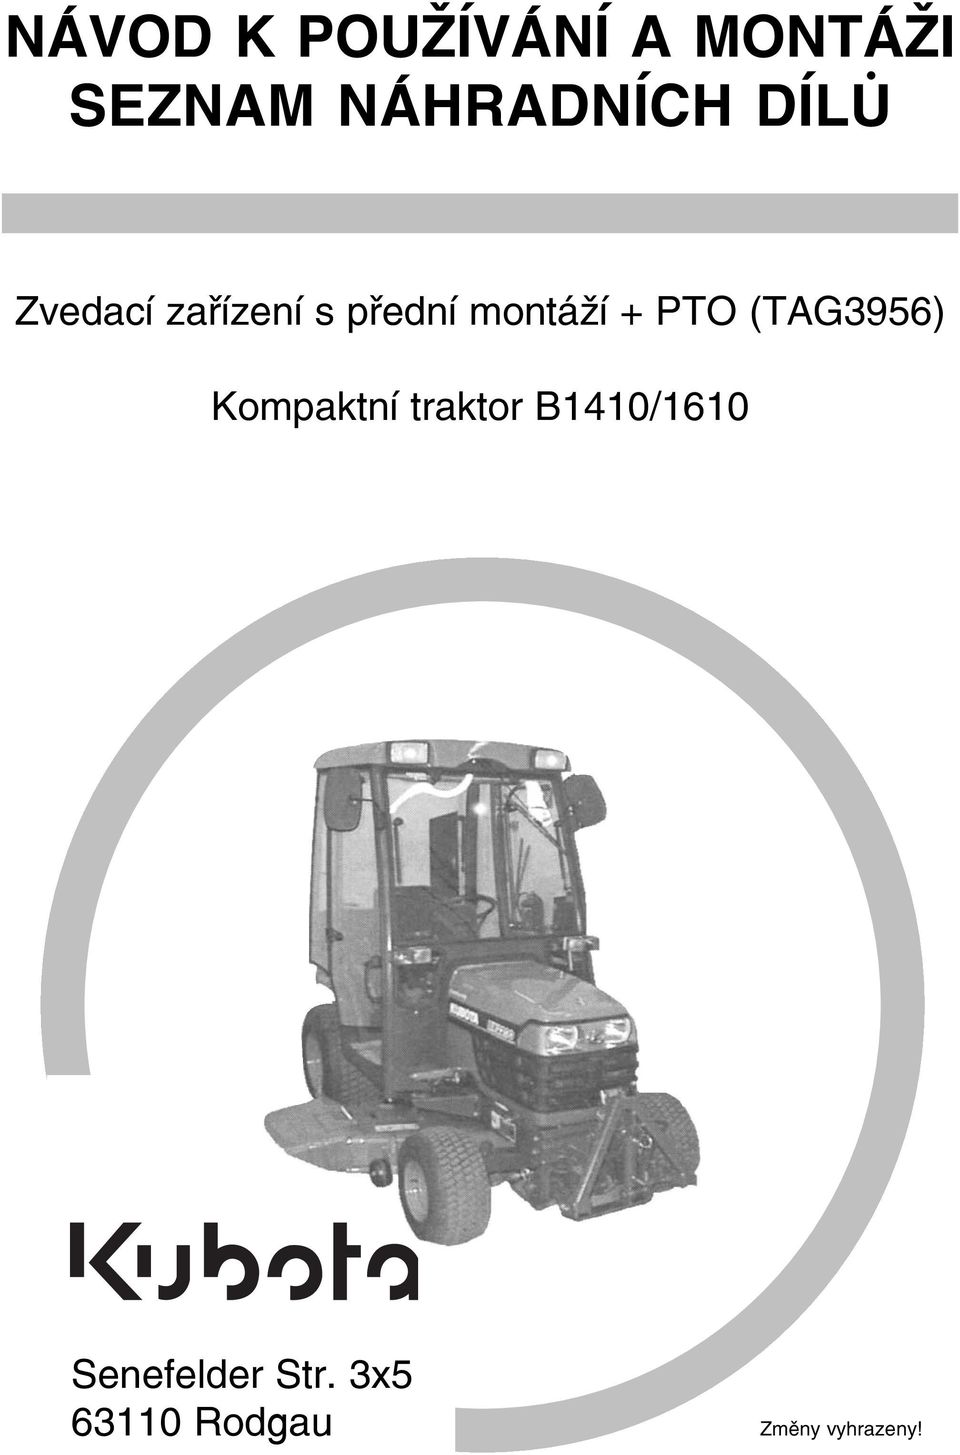 montáží + PTO (TAG3956) Kompaktní traktor